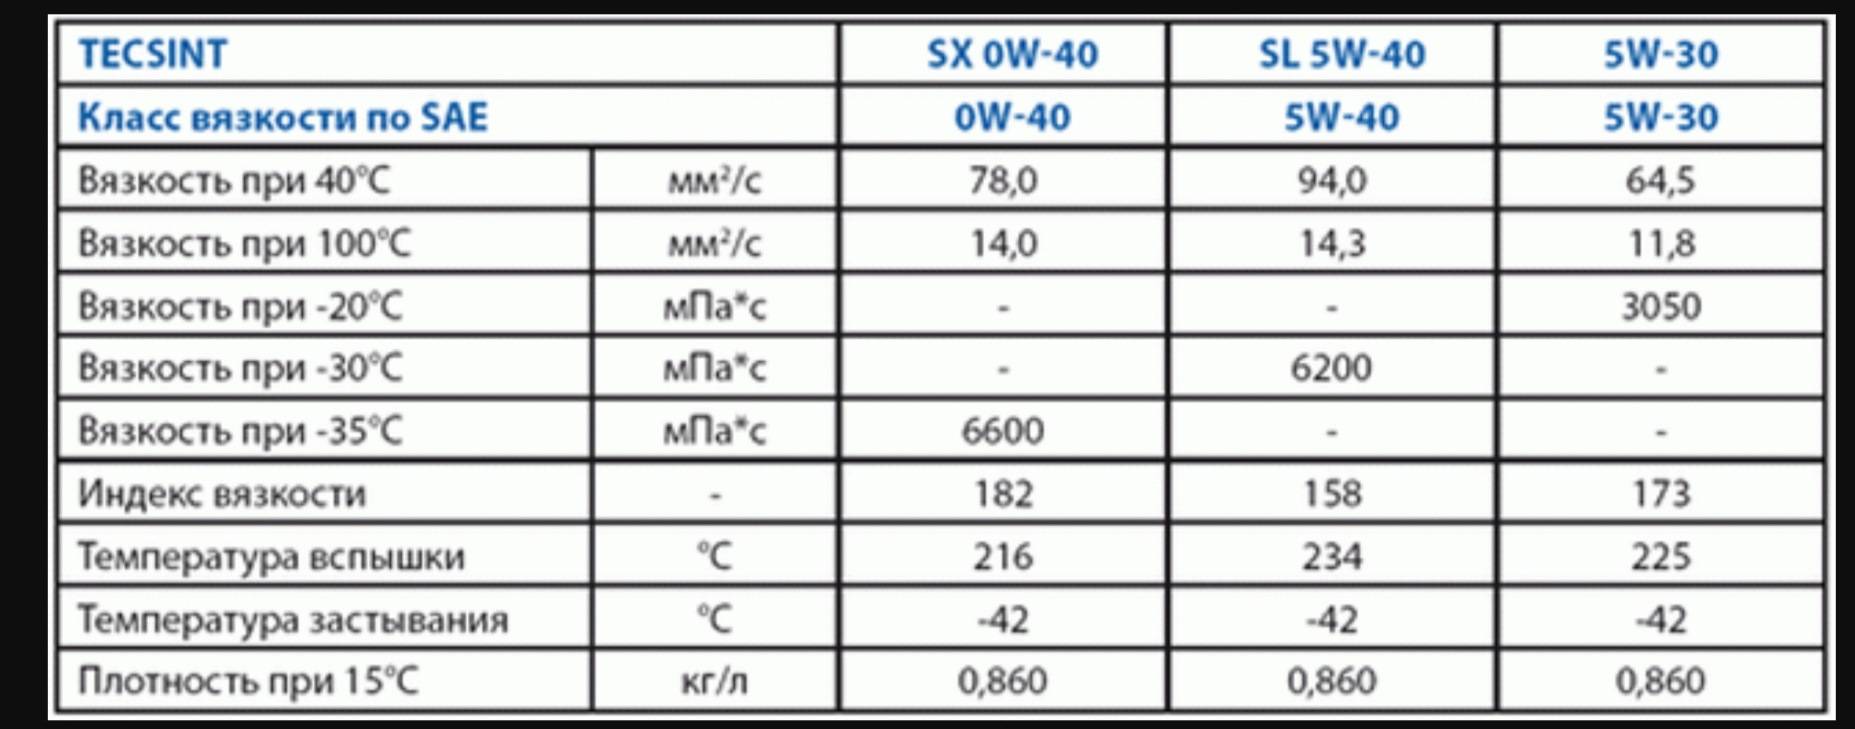 Сравниваем вязкость 5w-30 и 5w-40, находим в чем отличия исходя из тестирований